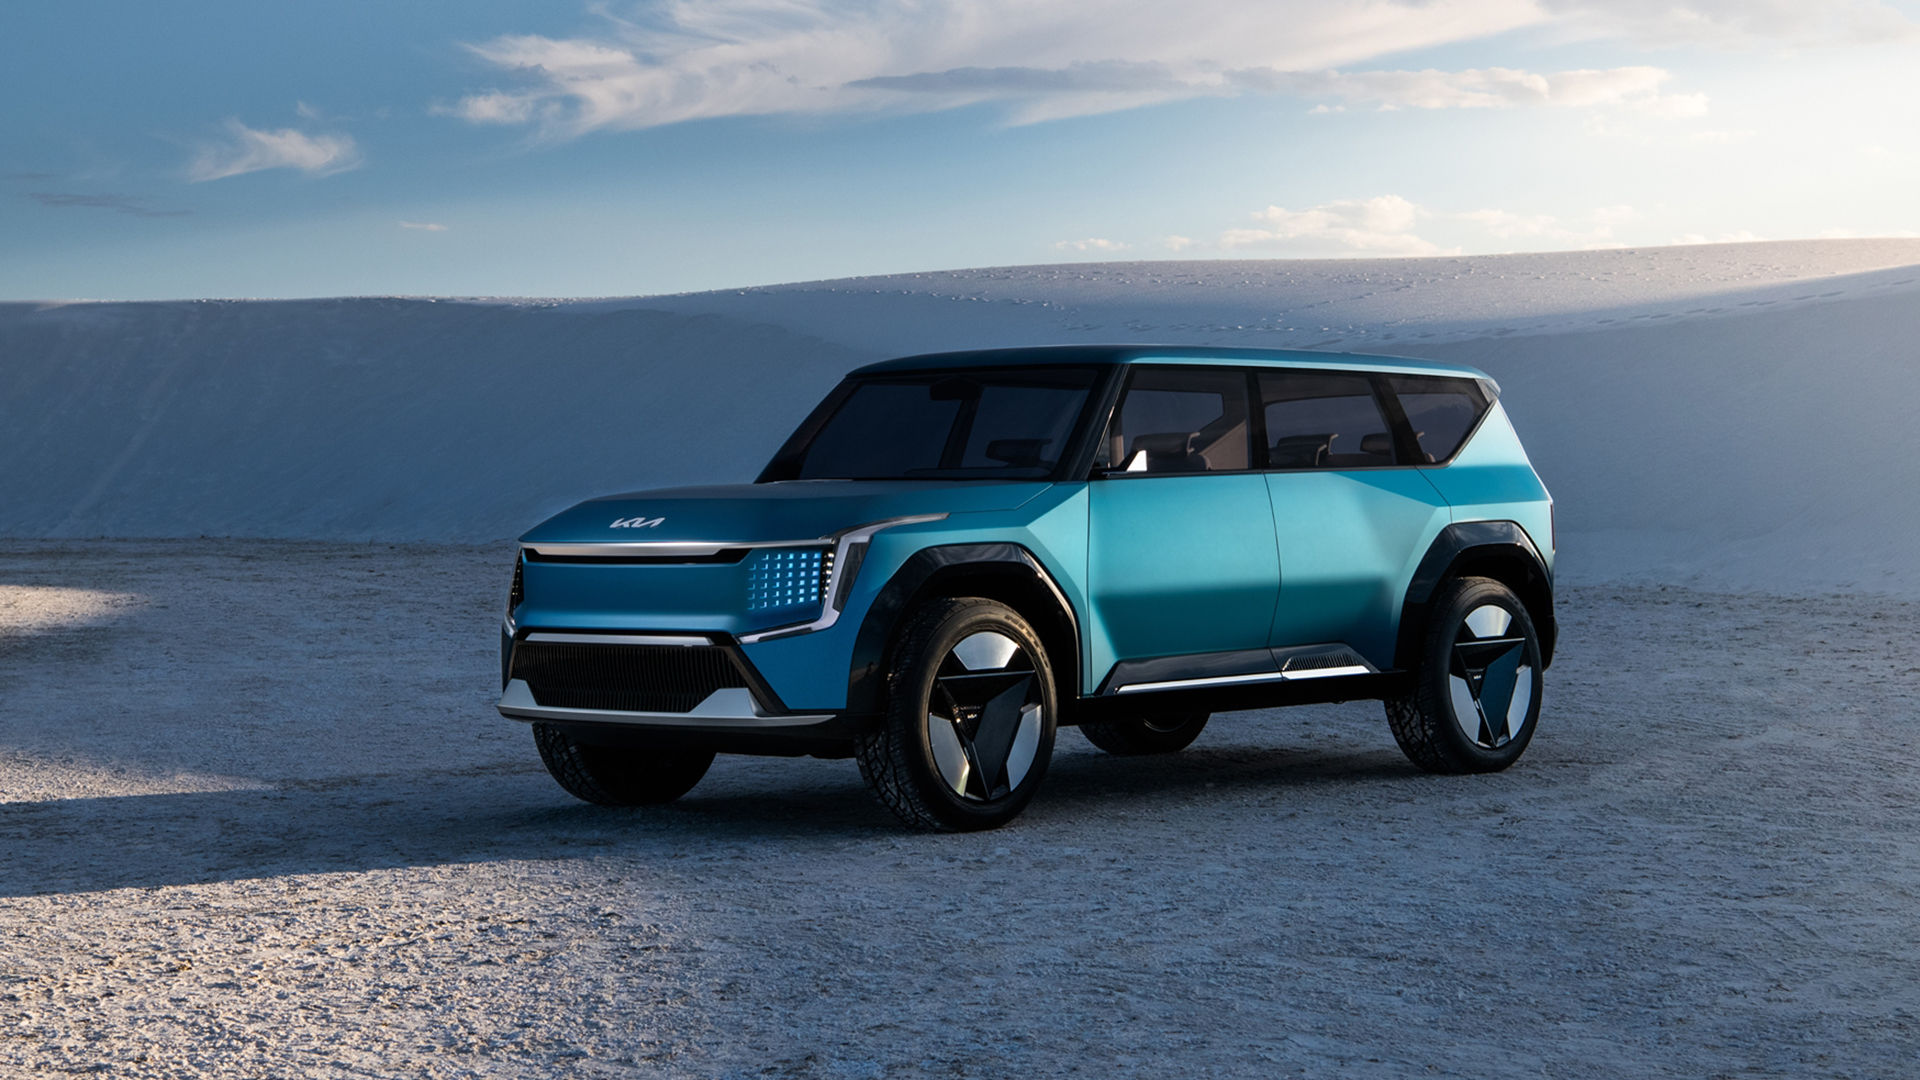 The Kia Concept EV9 - Kia’s all-electric SUV concept takes center stage at AutoMobility LA